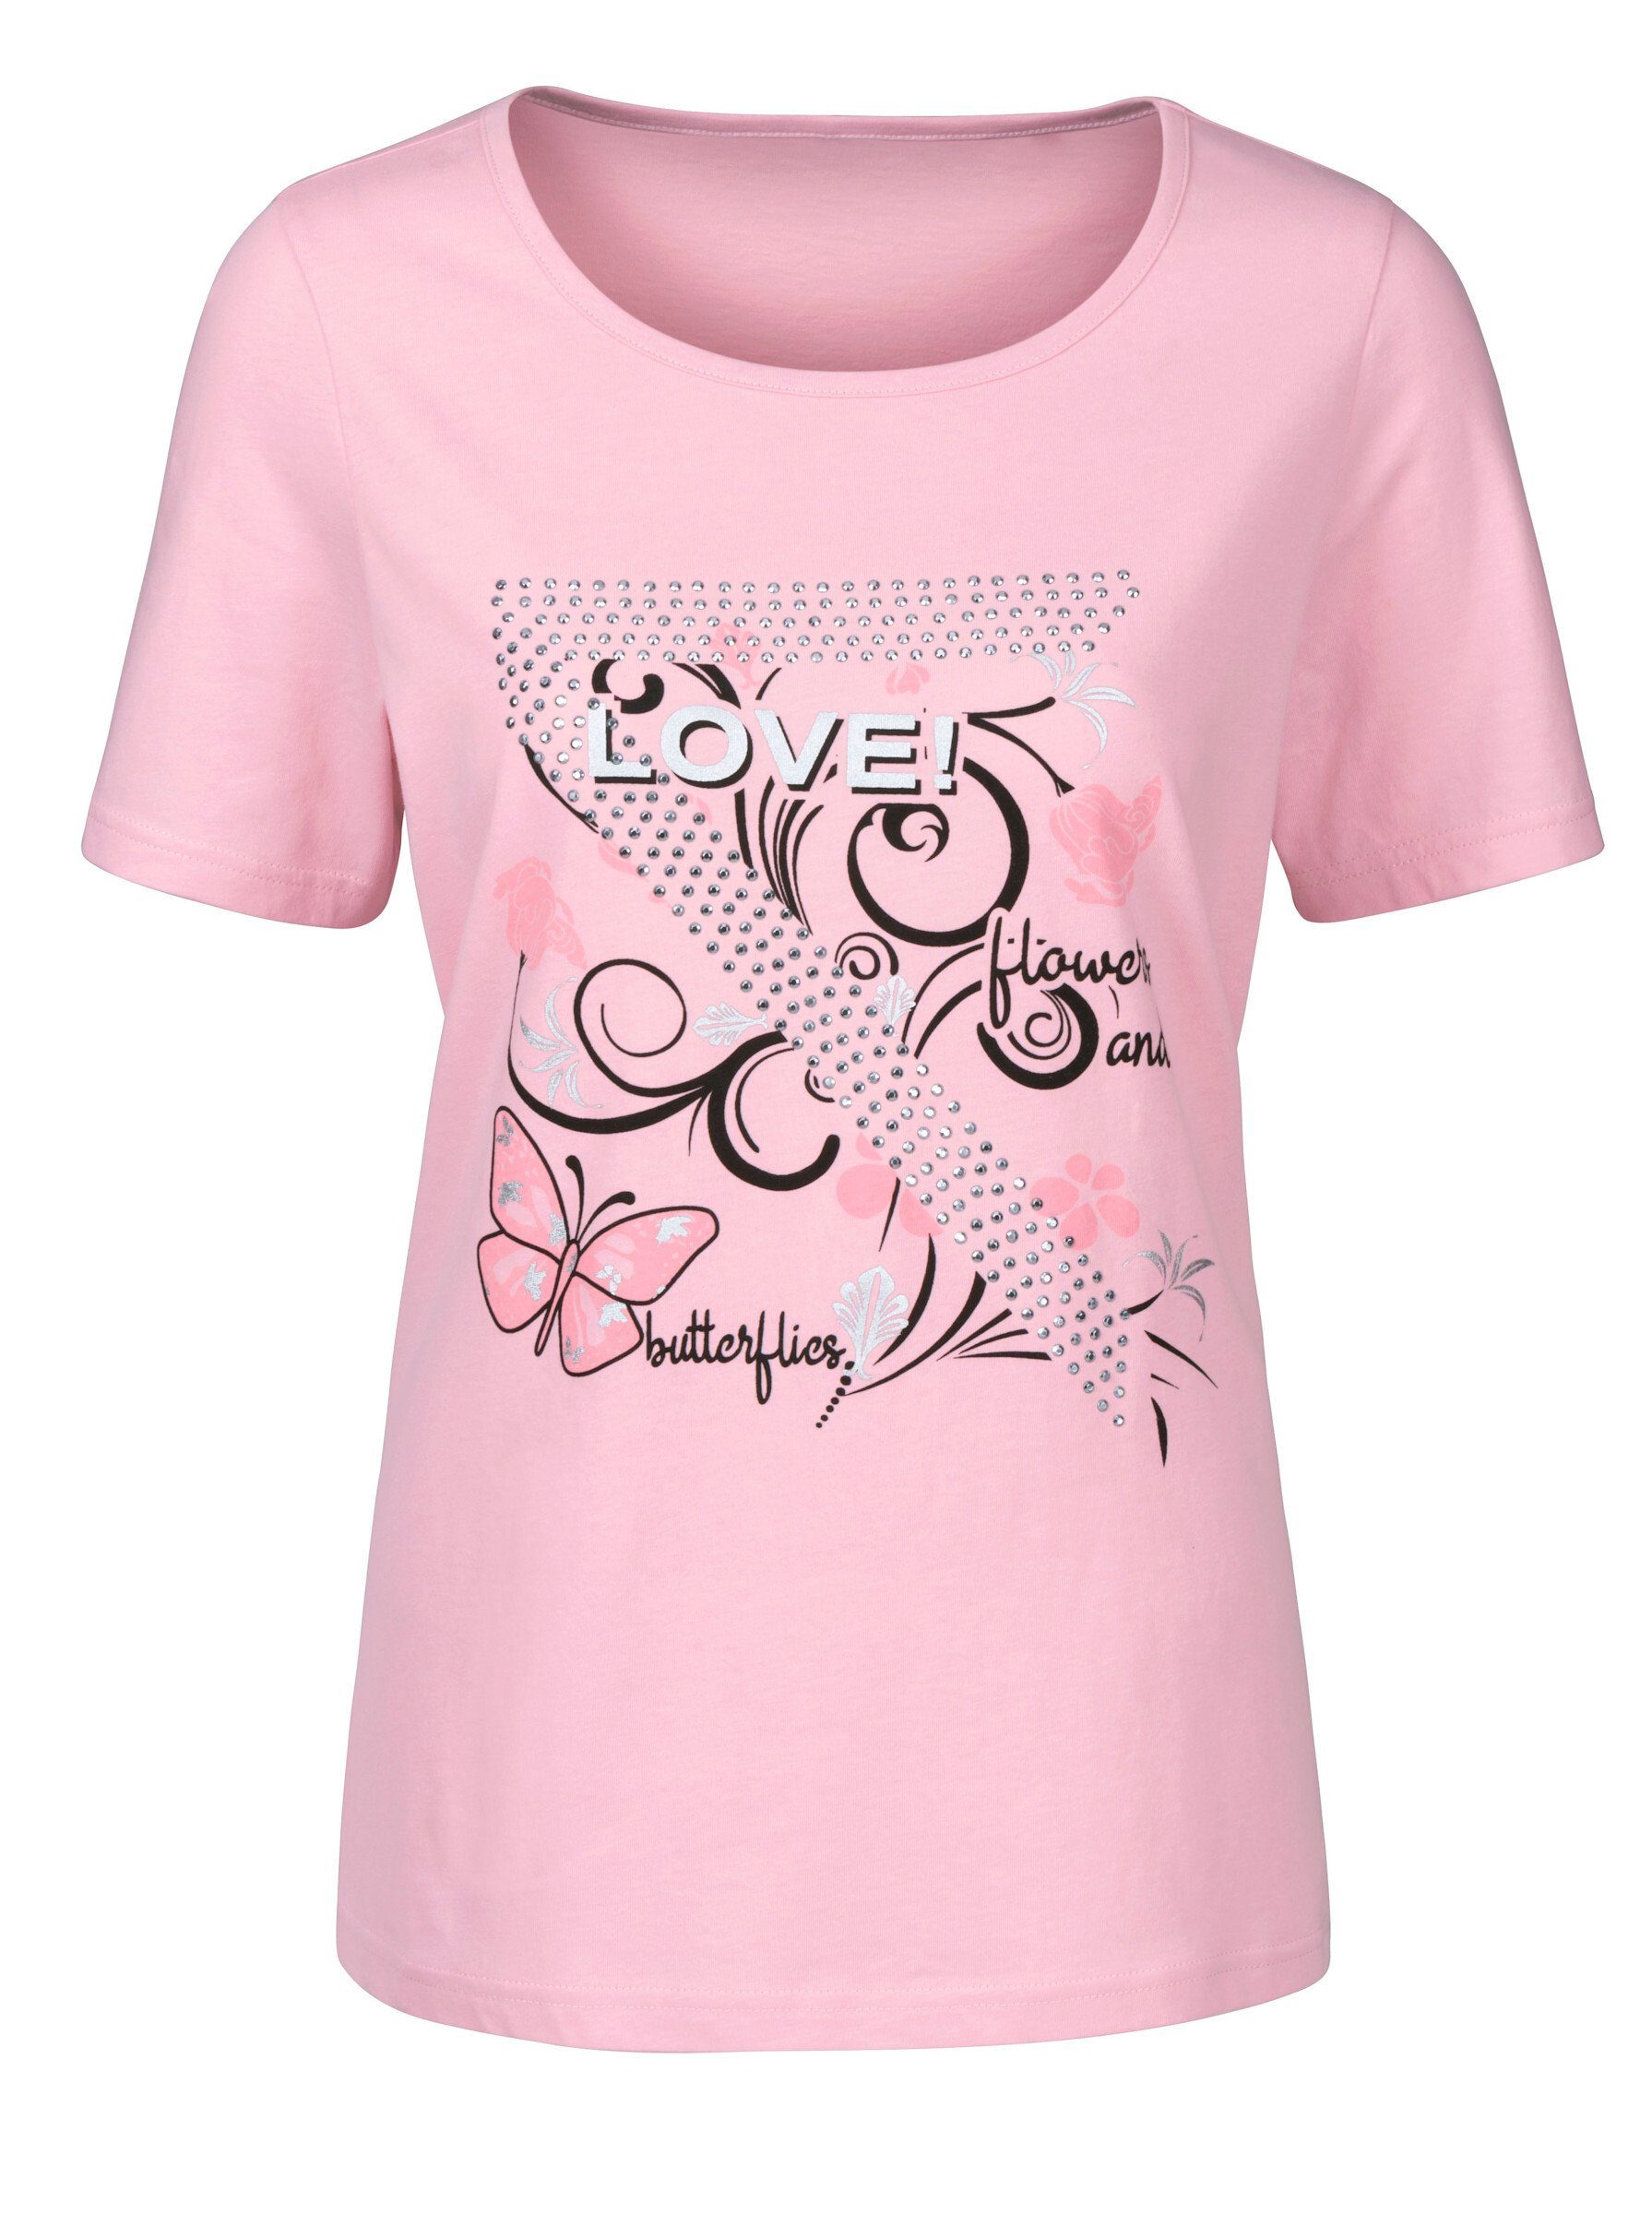 Sieh rosé T-Shirt an!